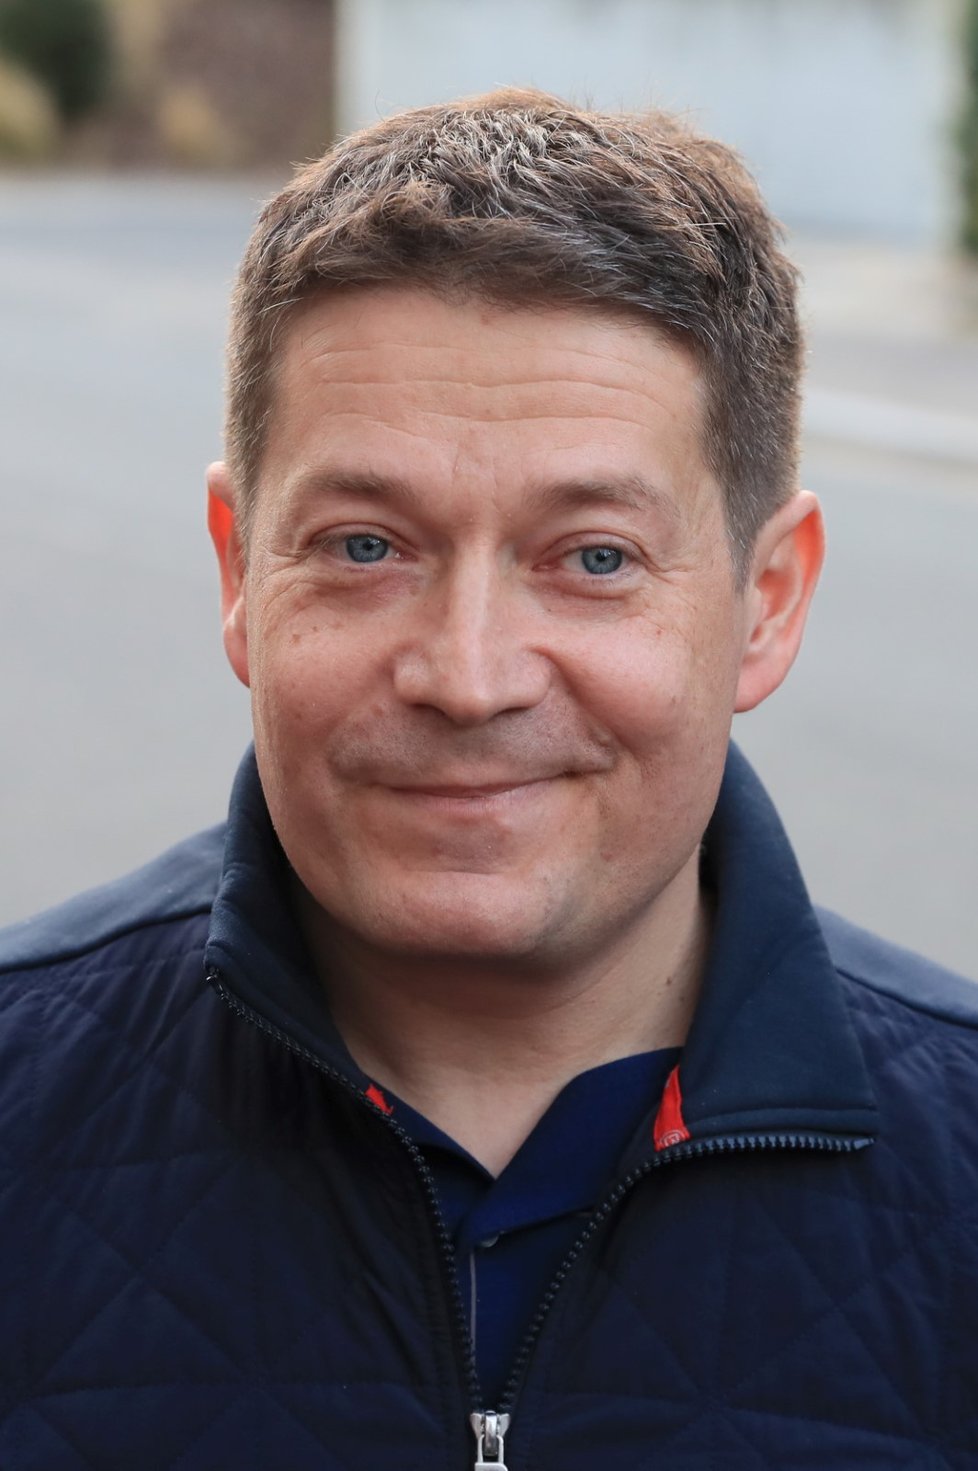 Lídr pražské kandidátky ANO Patrik Nacher přijel do volebního štábu ANO.